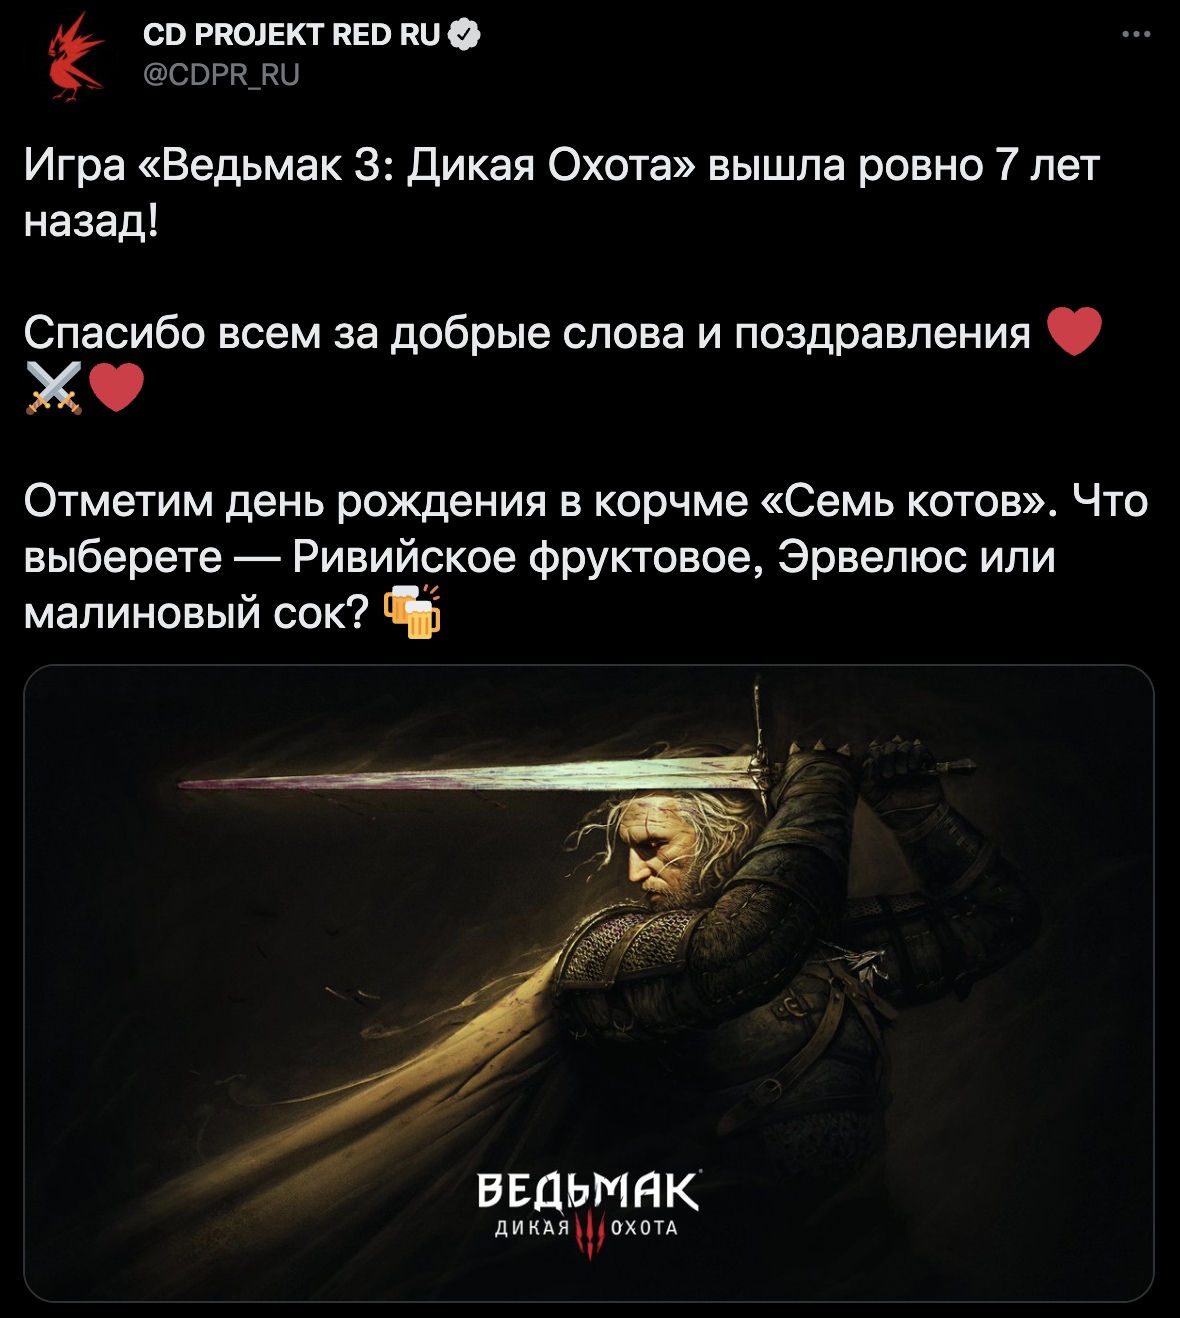 «Ведьмак 3» вышел 7 лет назад - CD Project Red поблагодарила русскоязычных фанатов